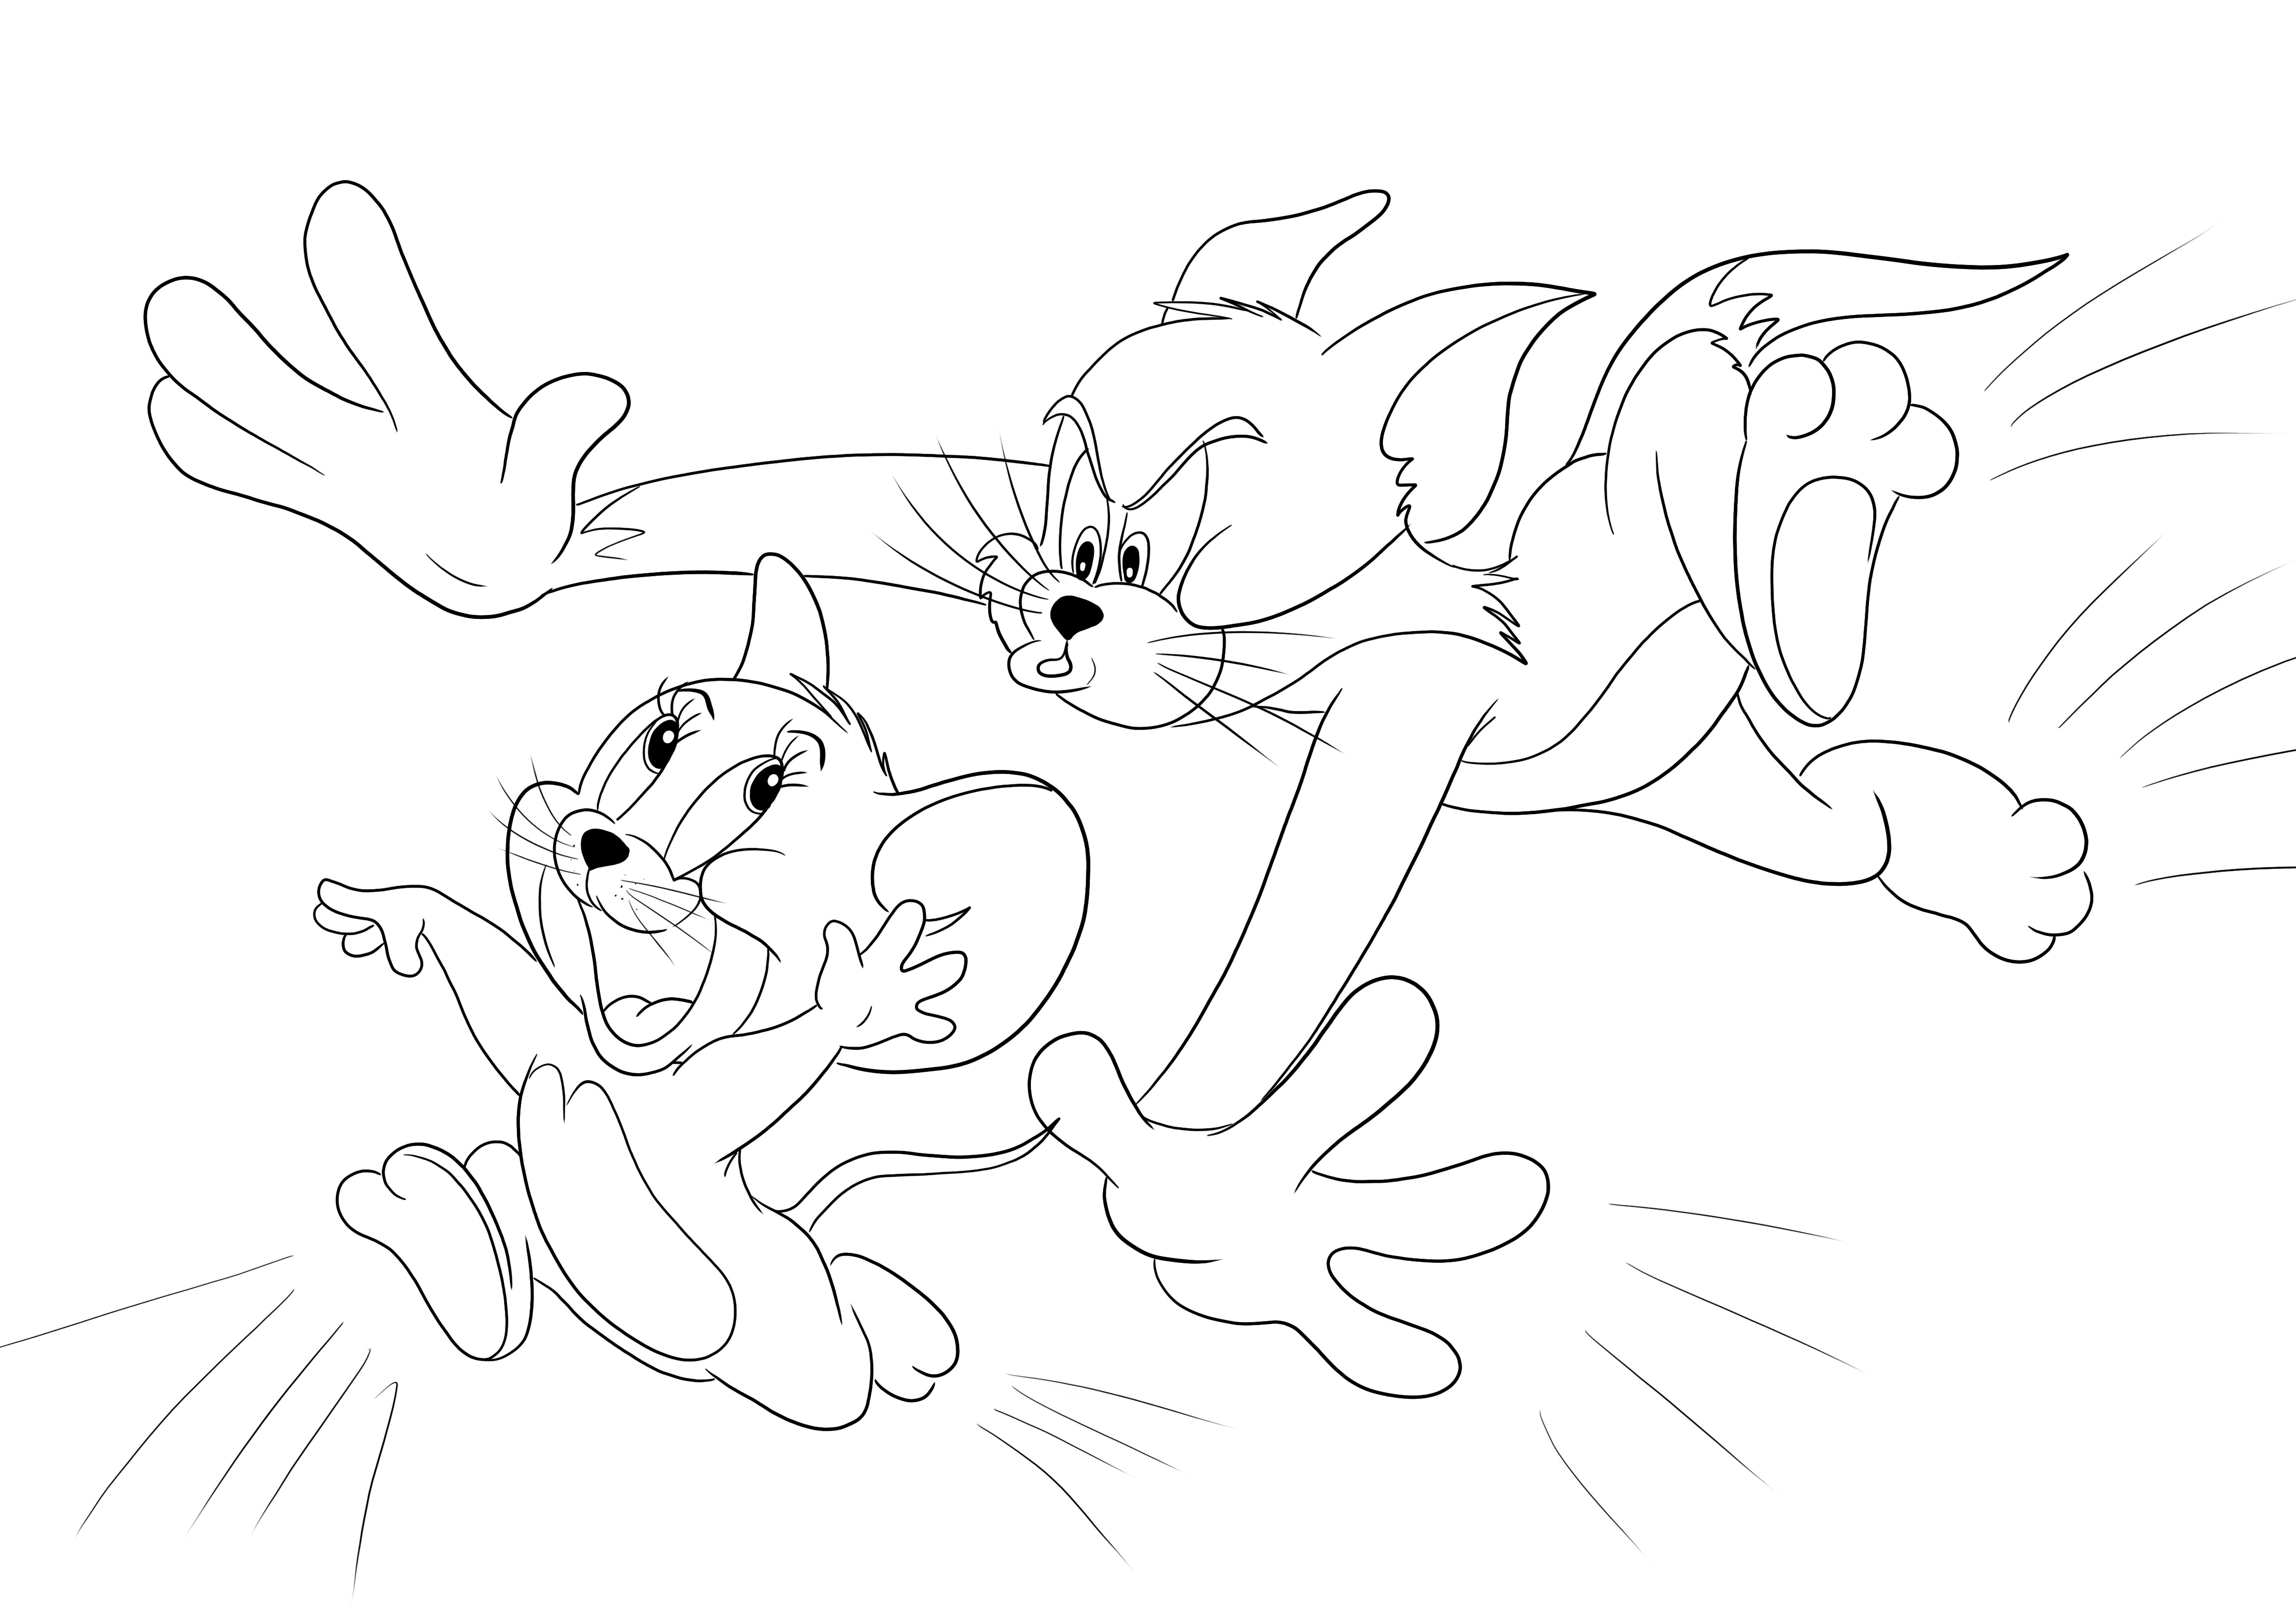 Tom Jerry'yi kovalıyor eğlence için boyama ve yazdırma veya ücretsiz indirme